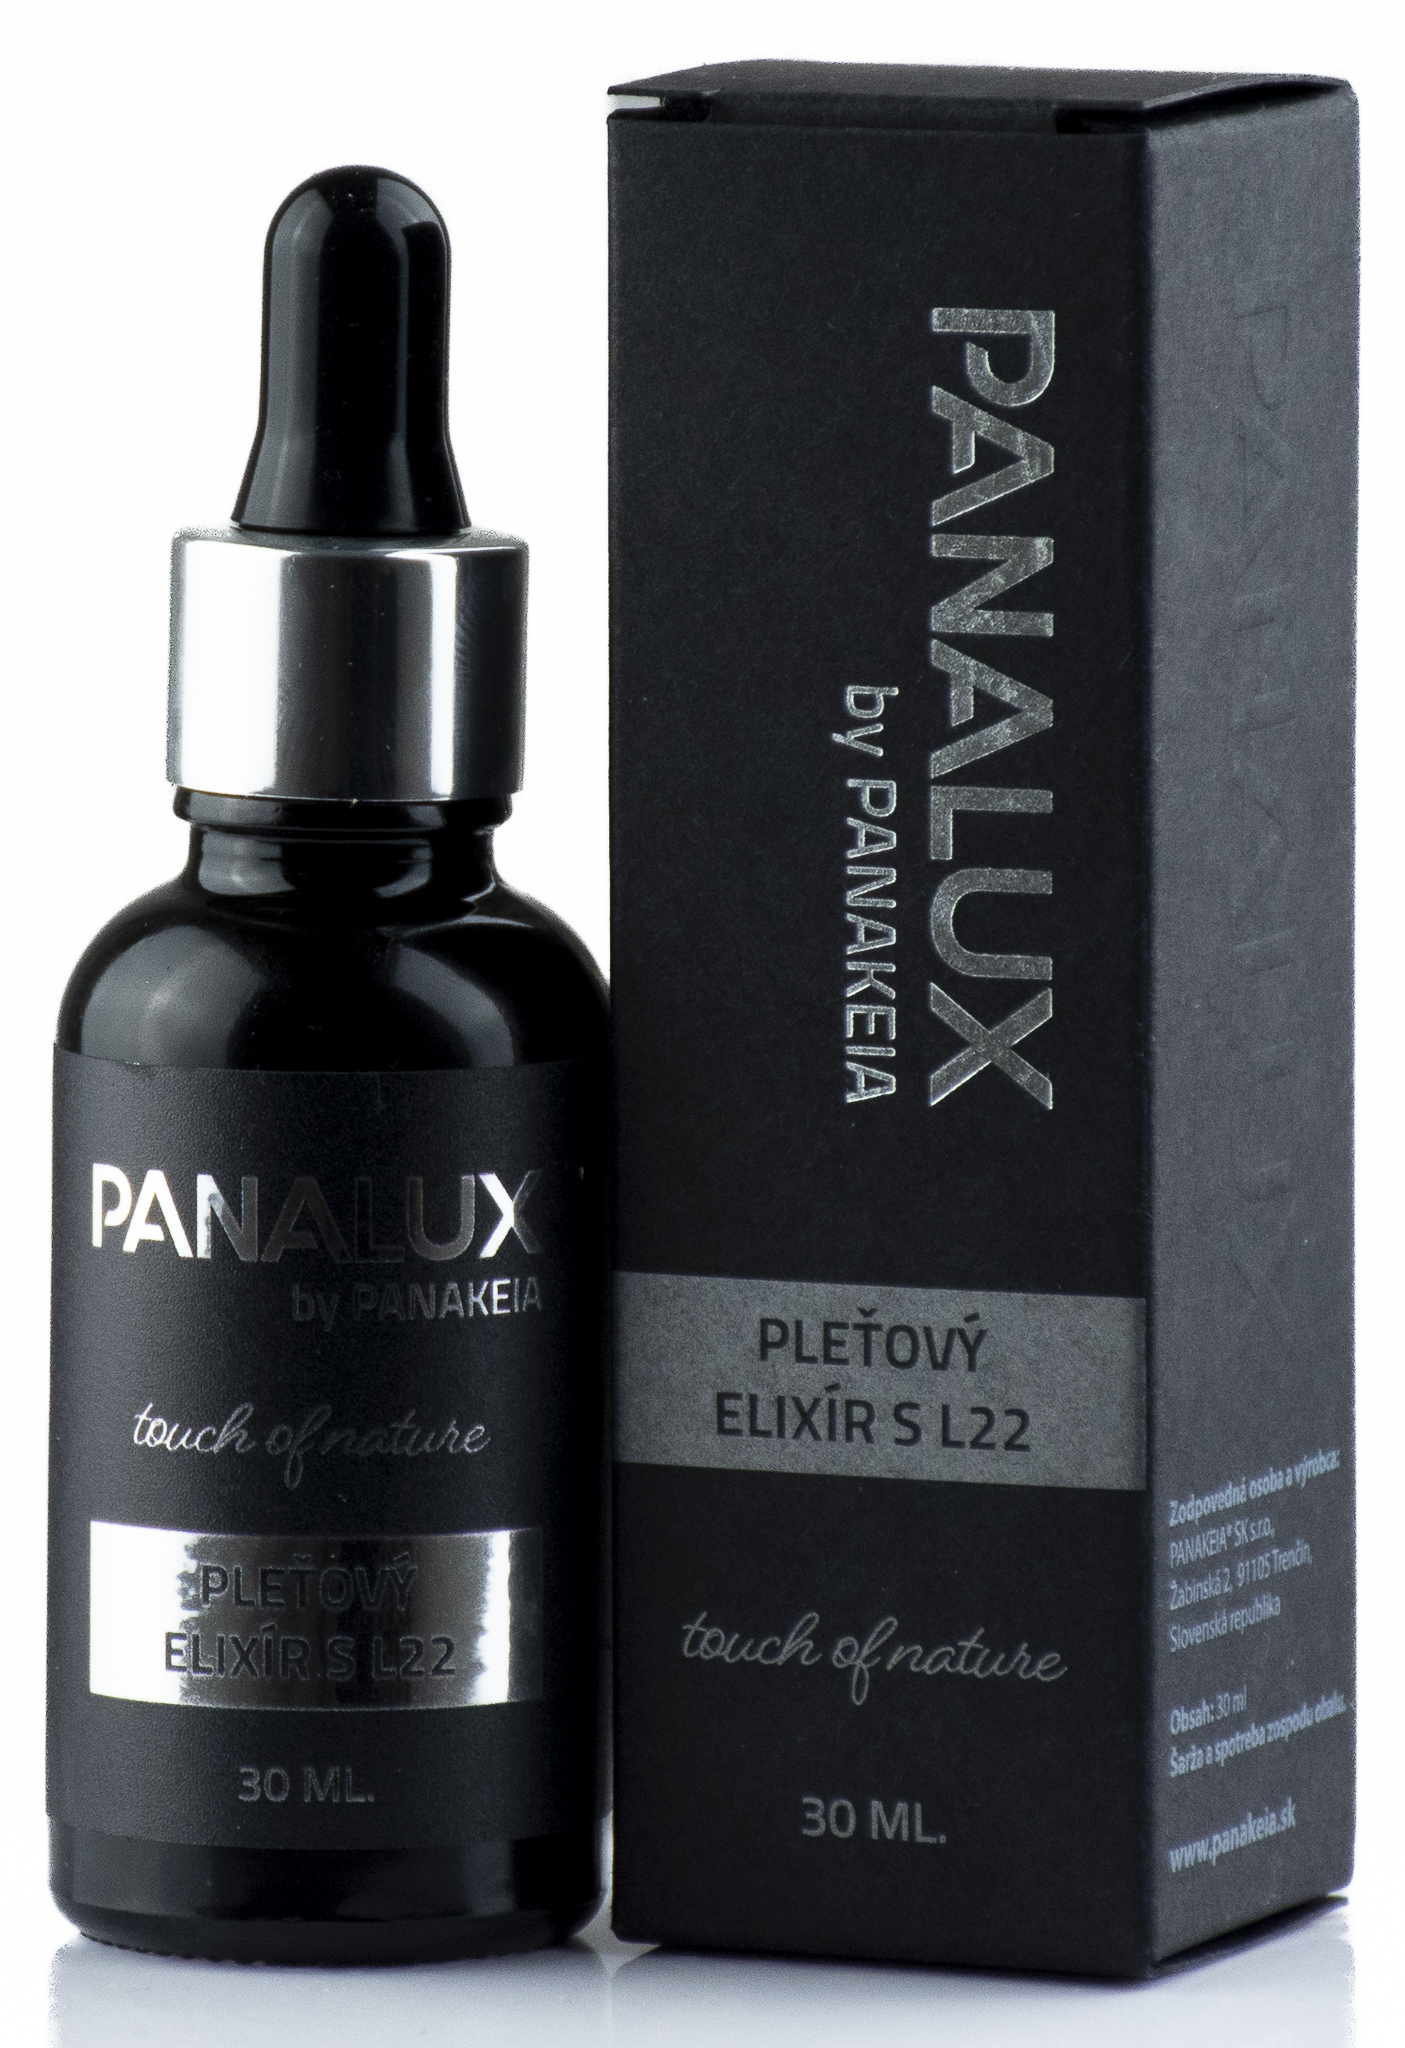 PANALUX by PANAKEIA Pleťový elixír s L22 30ml